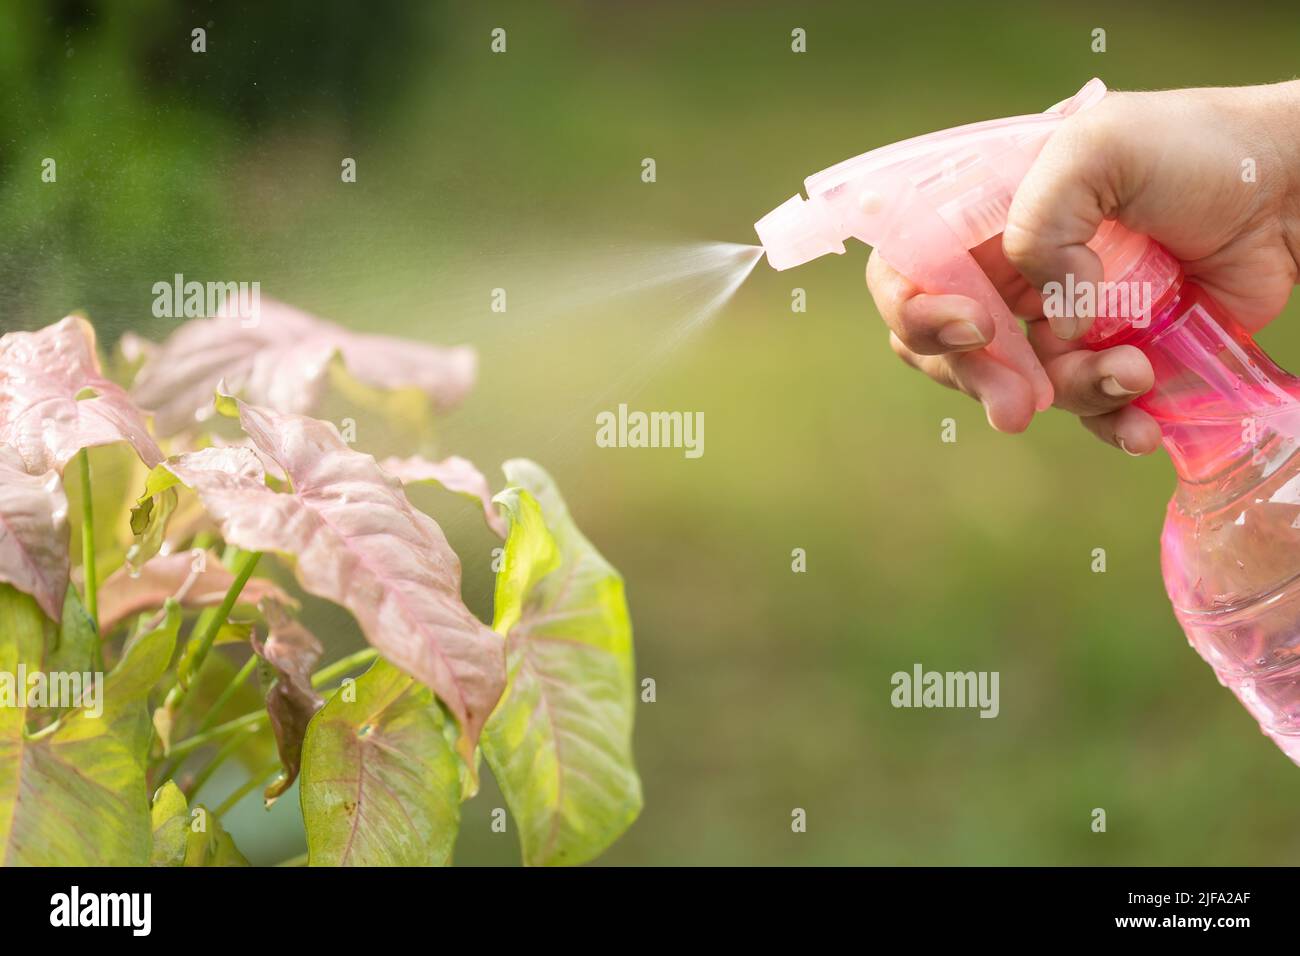 Chiudere la mano utilizzando spray rosa per innaffiare la pianta al mattino. Foto Stock